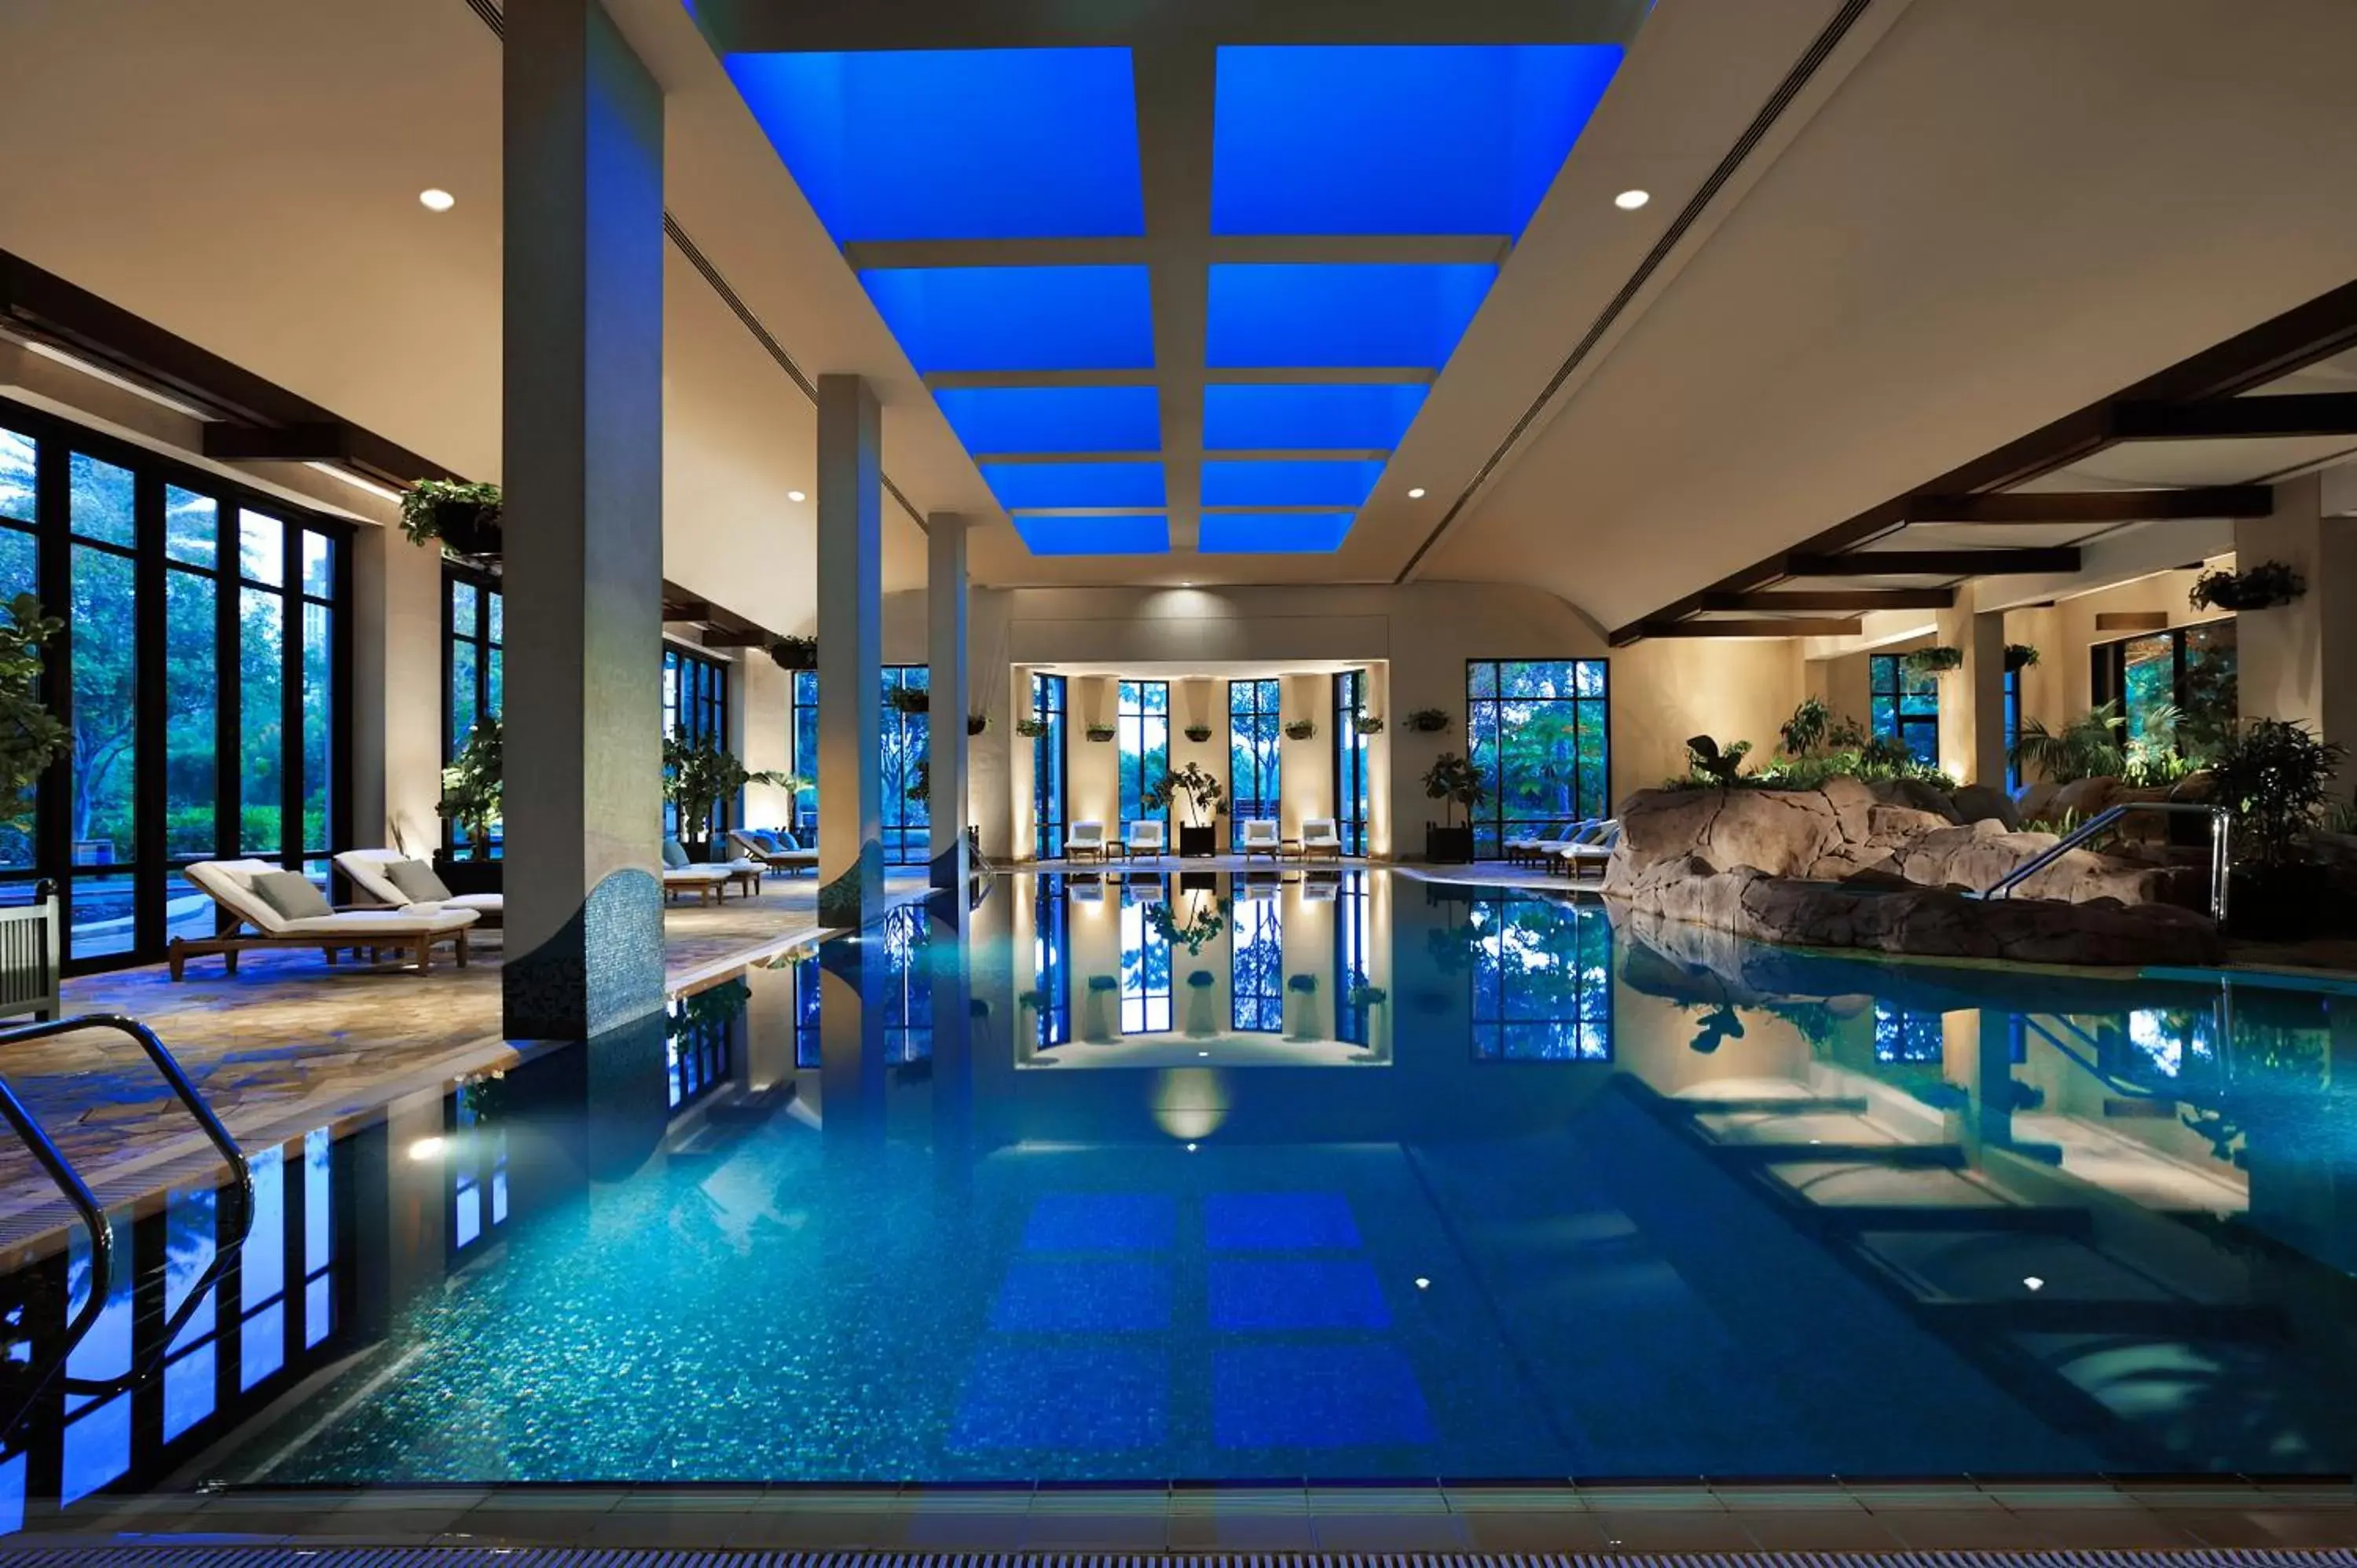 Swimming Pool in Grand Hyatt Dubai